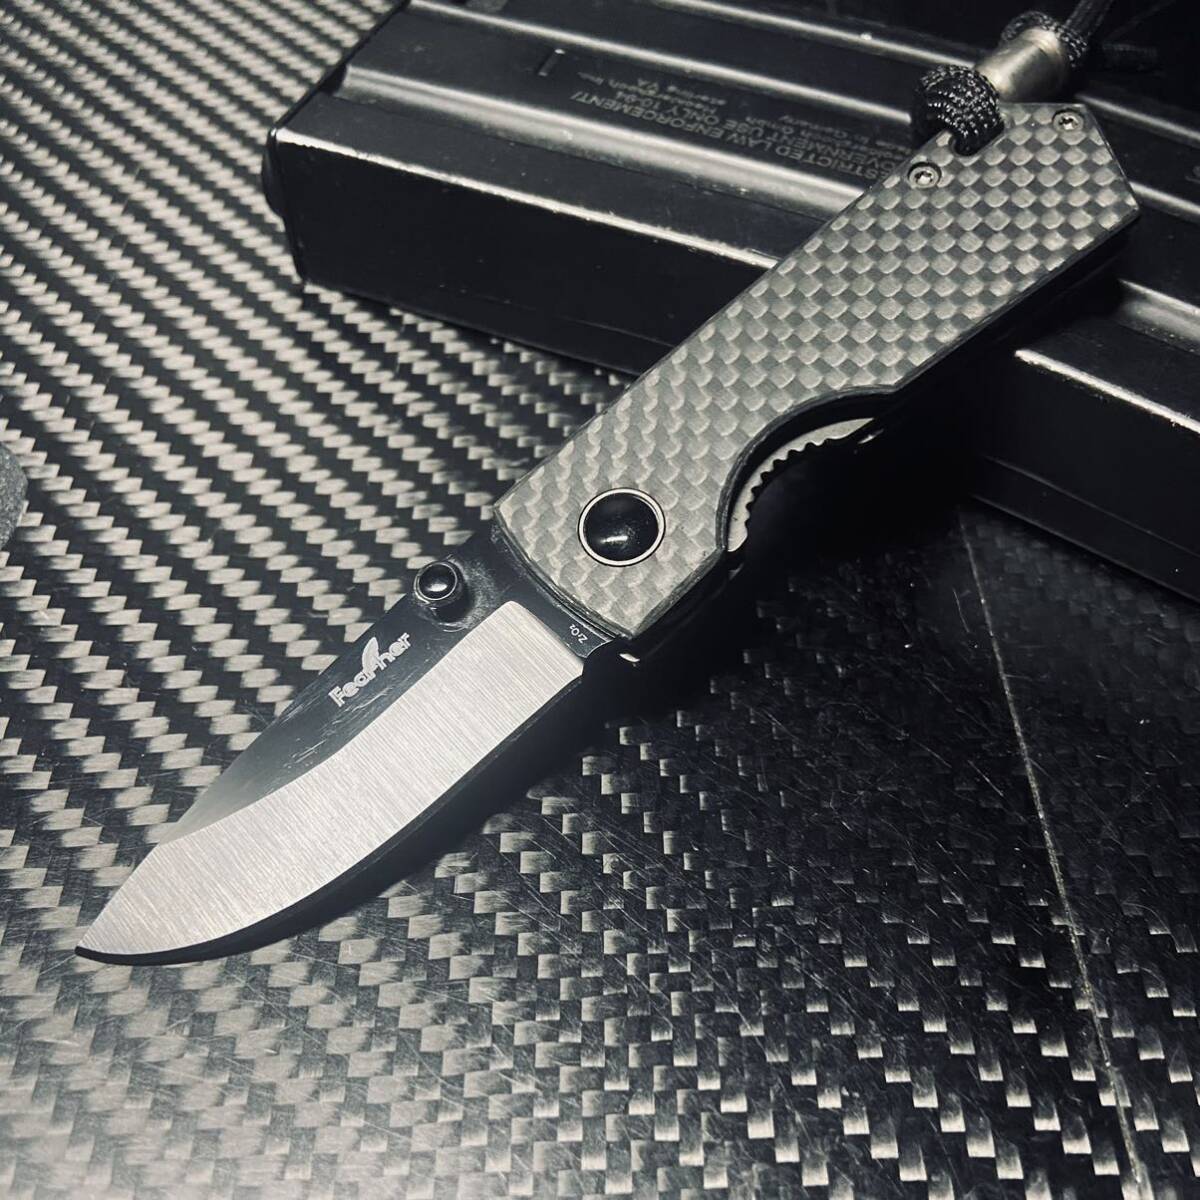 feather 非金属 カーボン製ハンドル セラミック刃 折りたたみナイフ 超軽量39g 長さ13.5cmアウトドアEDC サバイバルの画像1